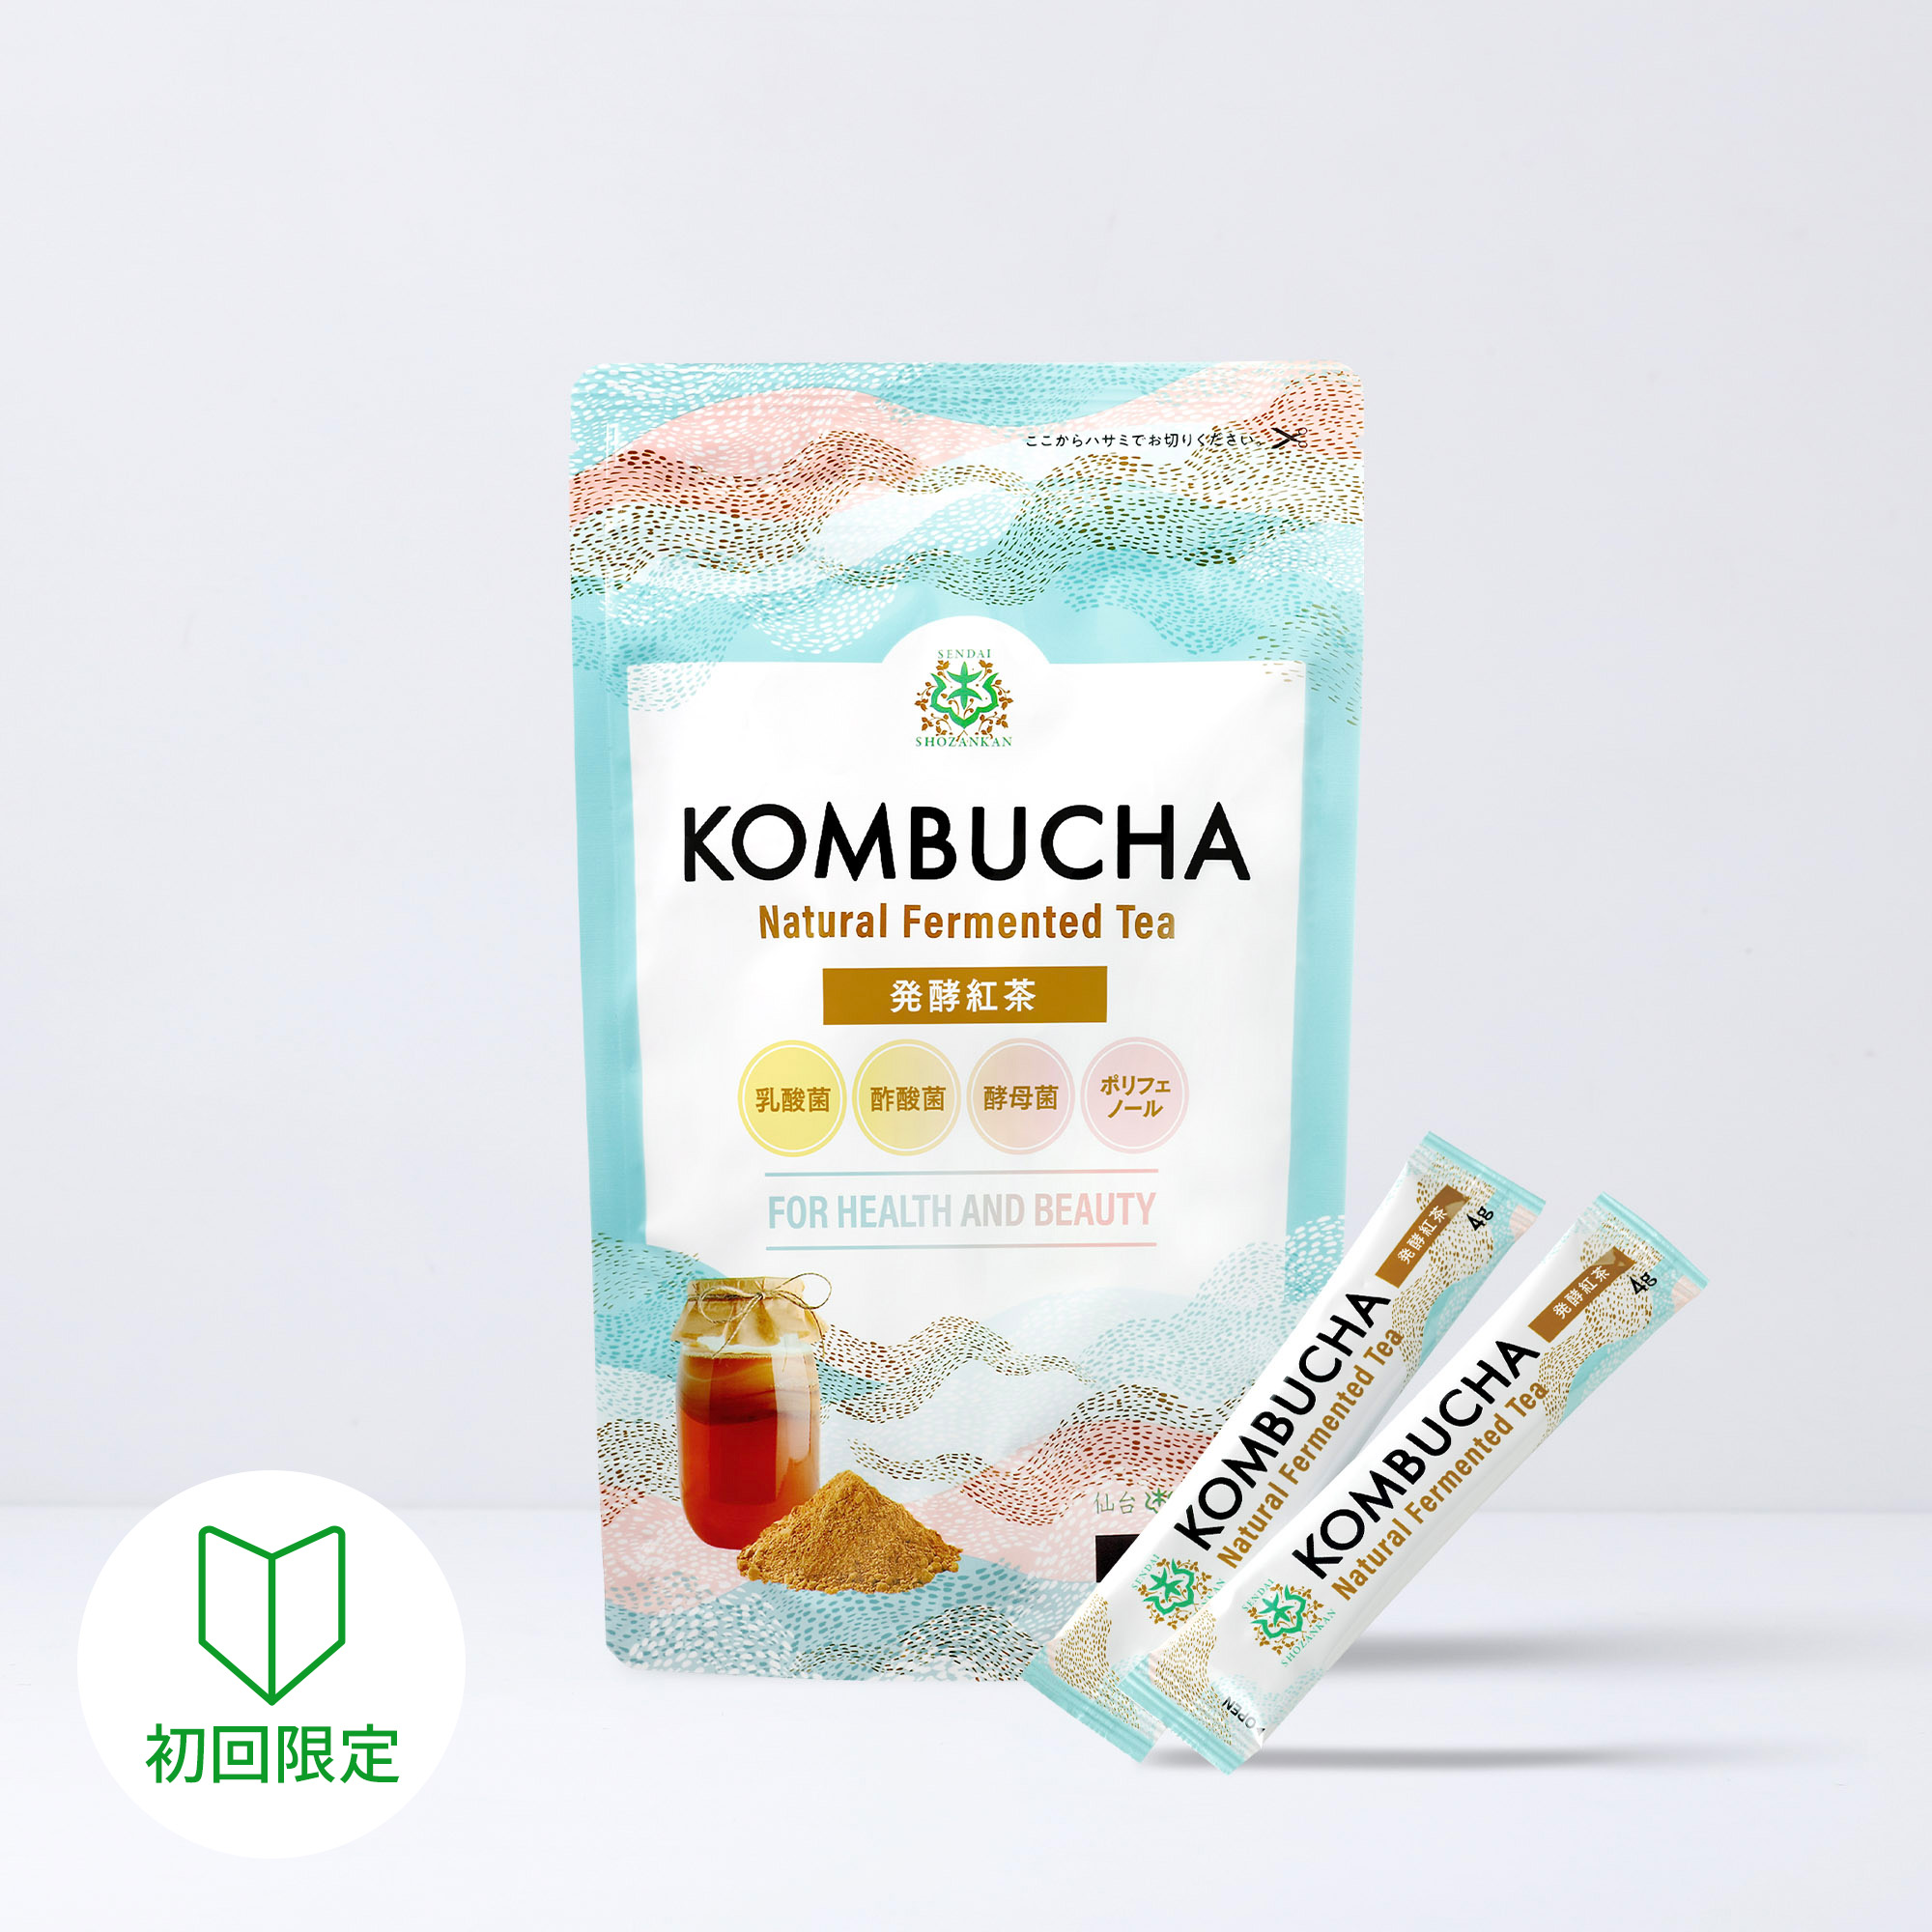 【初回限定】仙台勝山館 発酵紅茶 KOMBUCHA 4g×12本